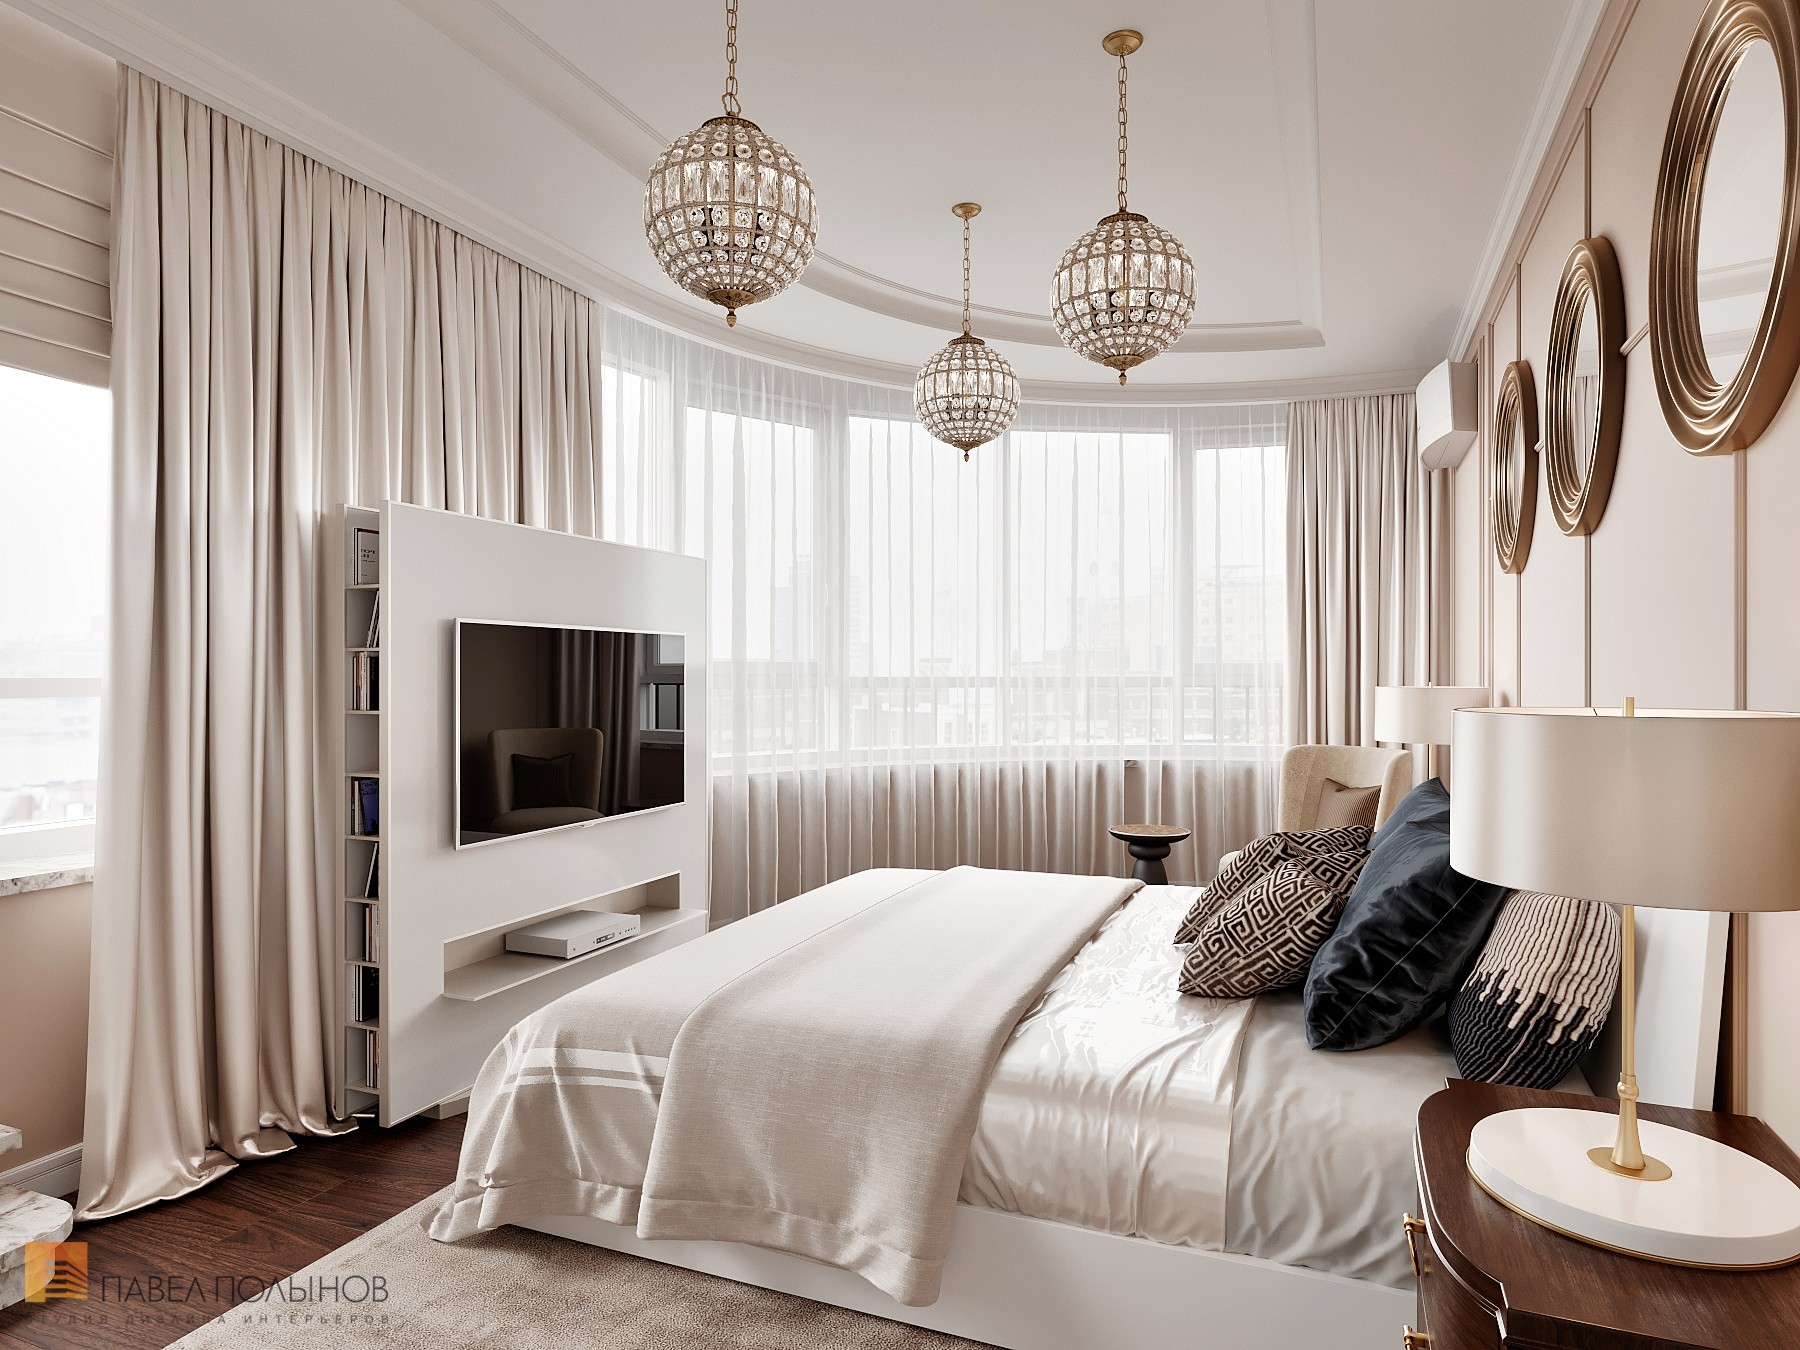 Фото спальня из проекта «Интерьер квартиры 200 кв.м. в стиле Ар-деко, ЖК «Граф Орлов»»